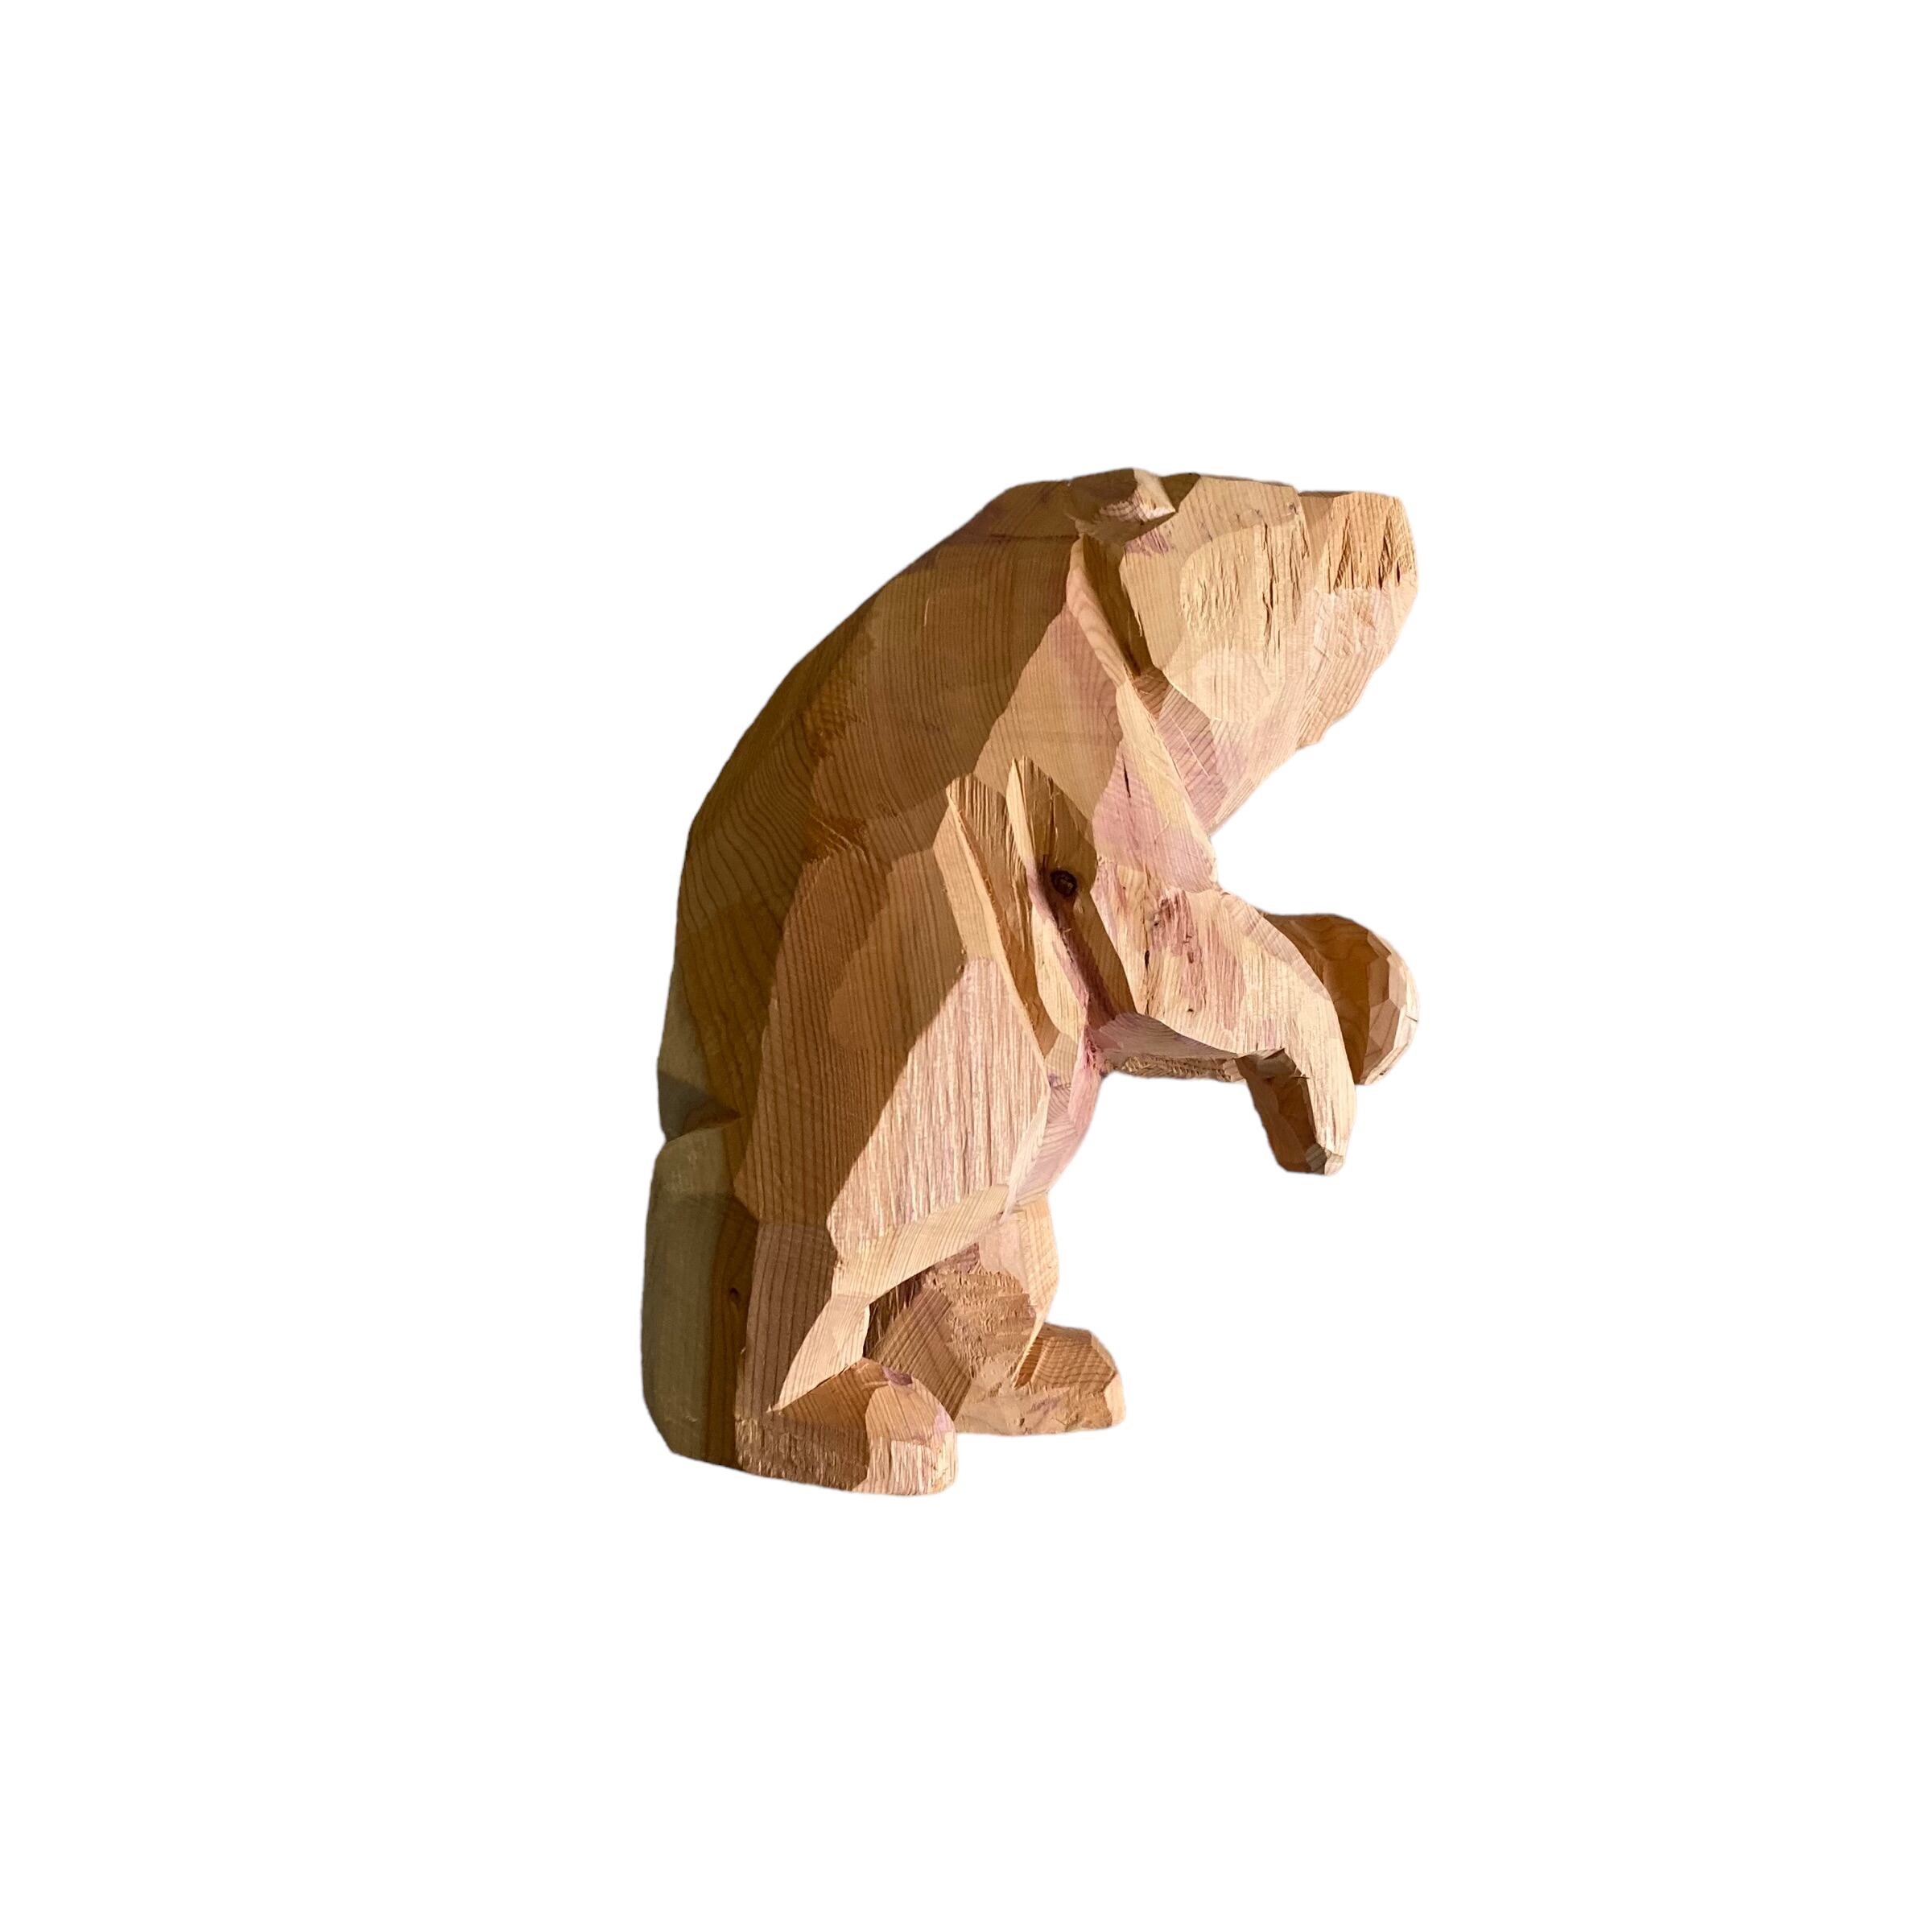 世界有名な 木彫りの熊 久保作 足裏に作者名の彫りあり 彫刻・オブジェ